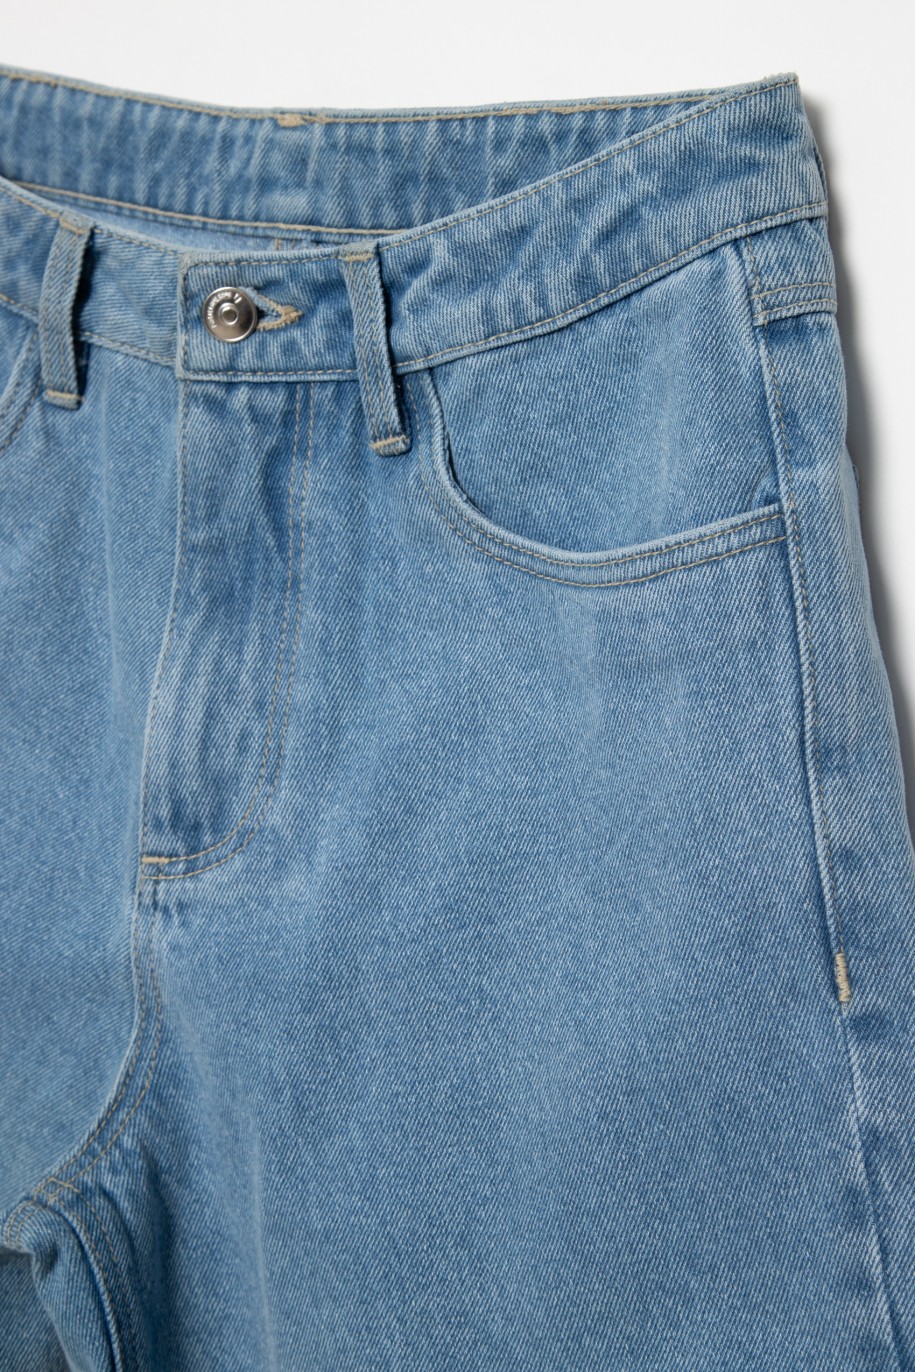 Jeansowe krótkie spodenki dla dziewczyny - 41562